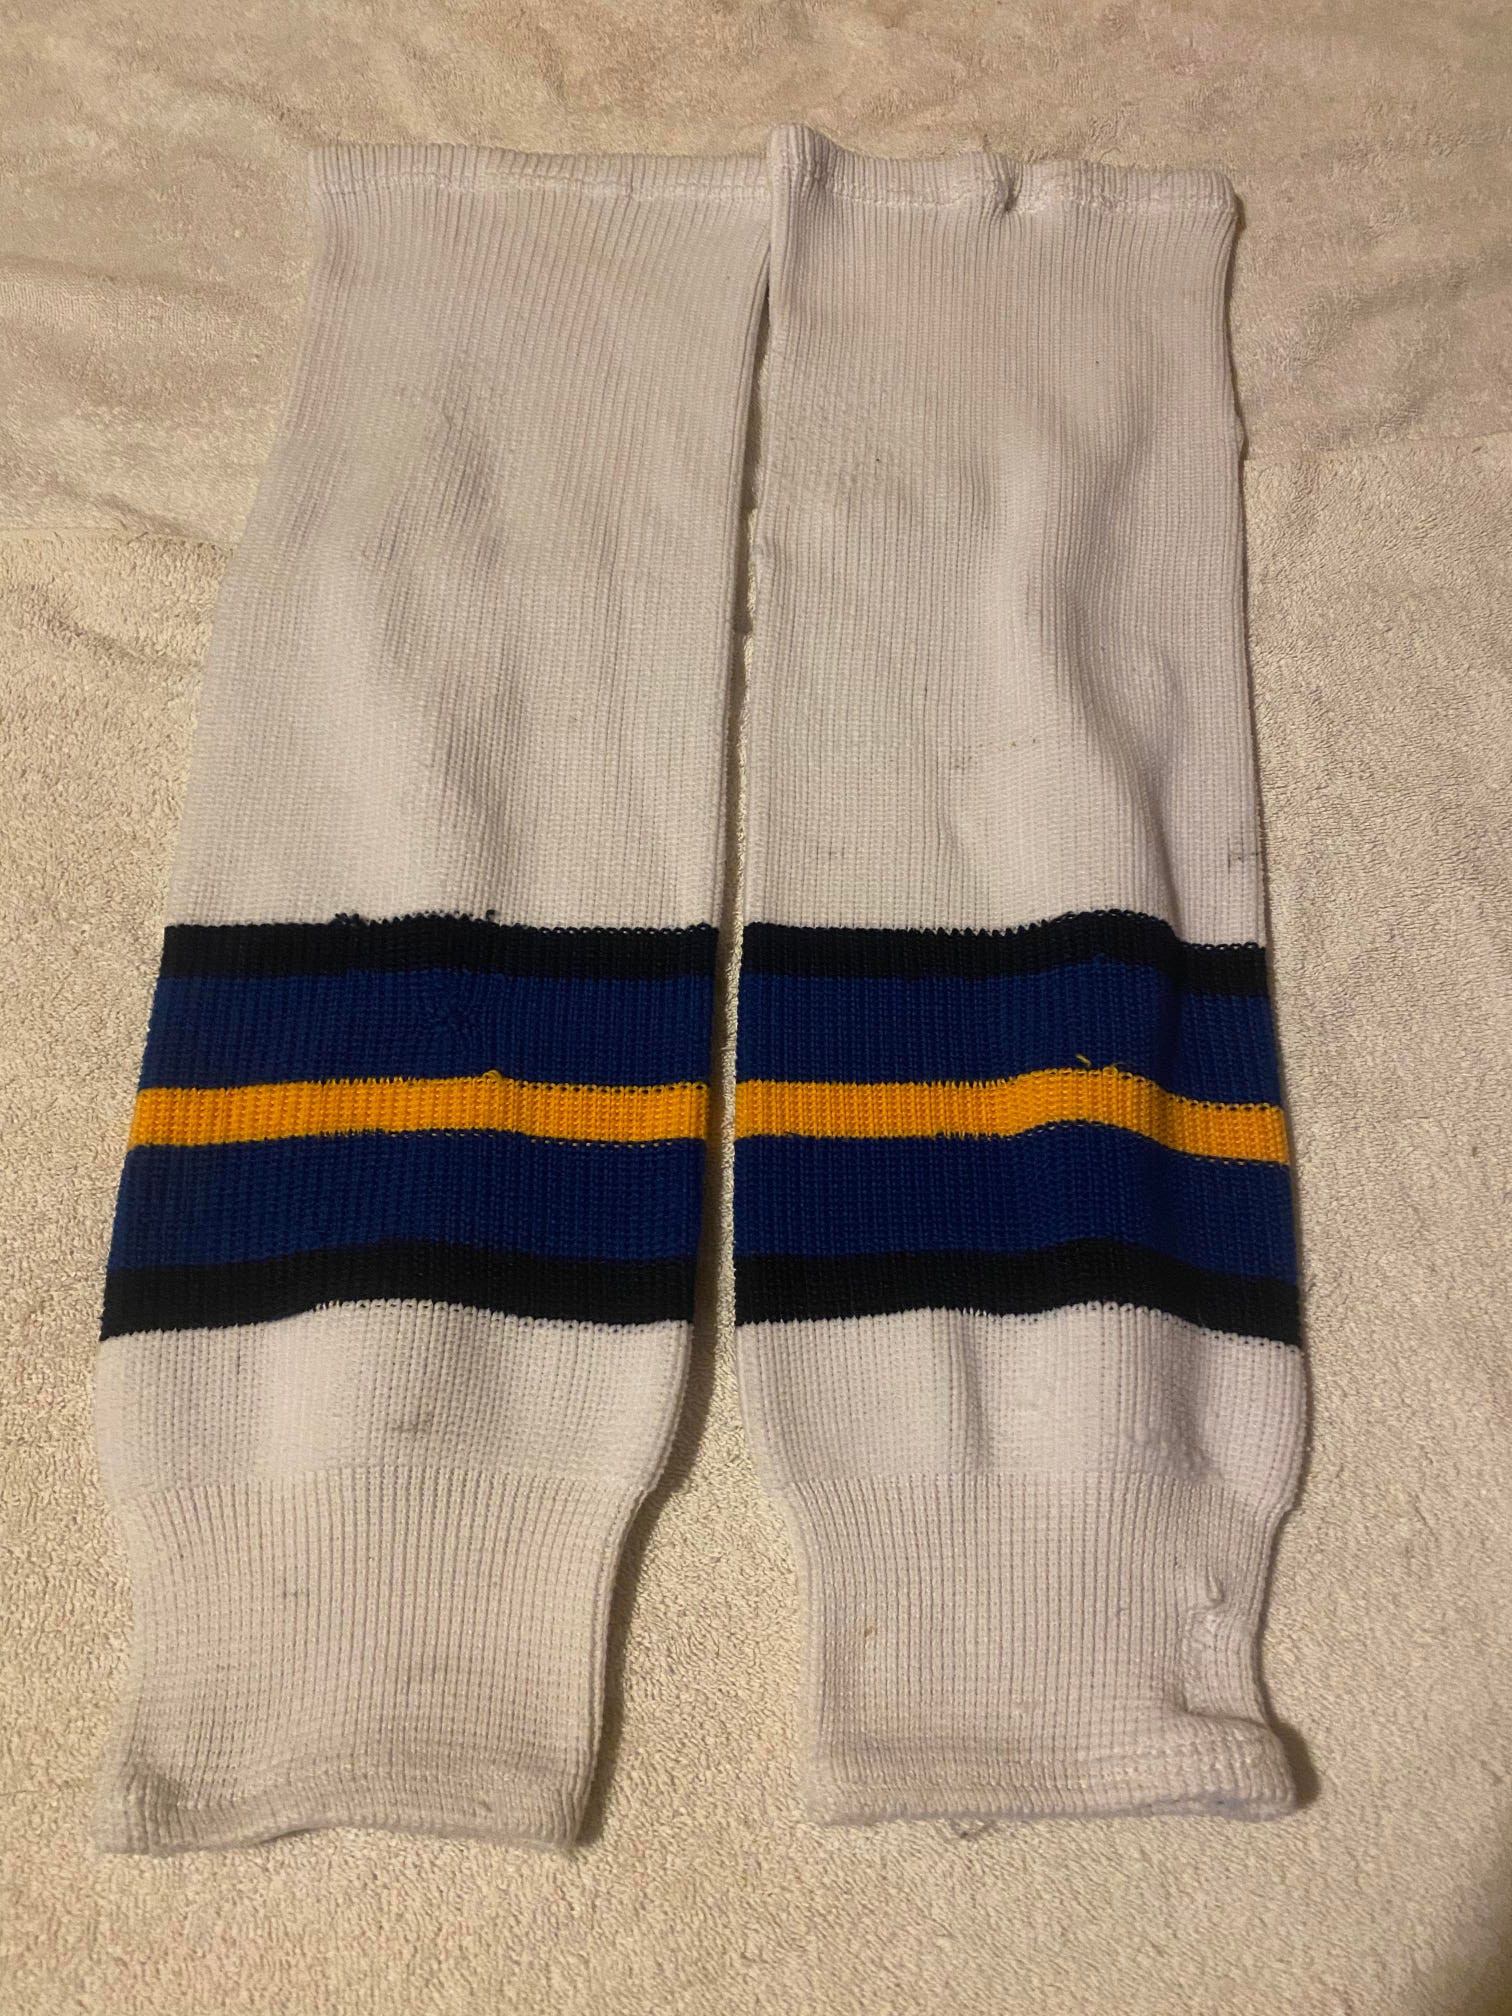 CCM Hockey Knit Hockey Socks Pro Stock Hockey Socks, Size Adult 29"